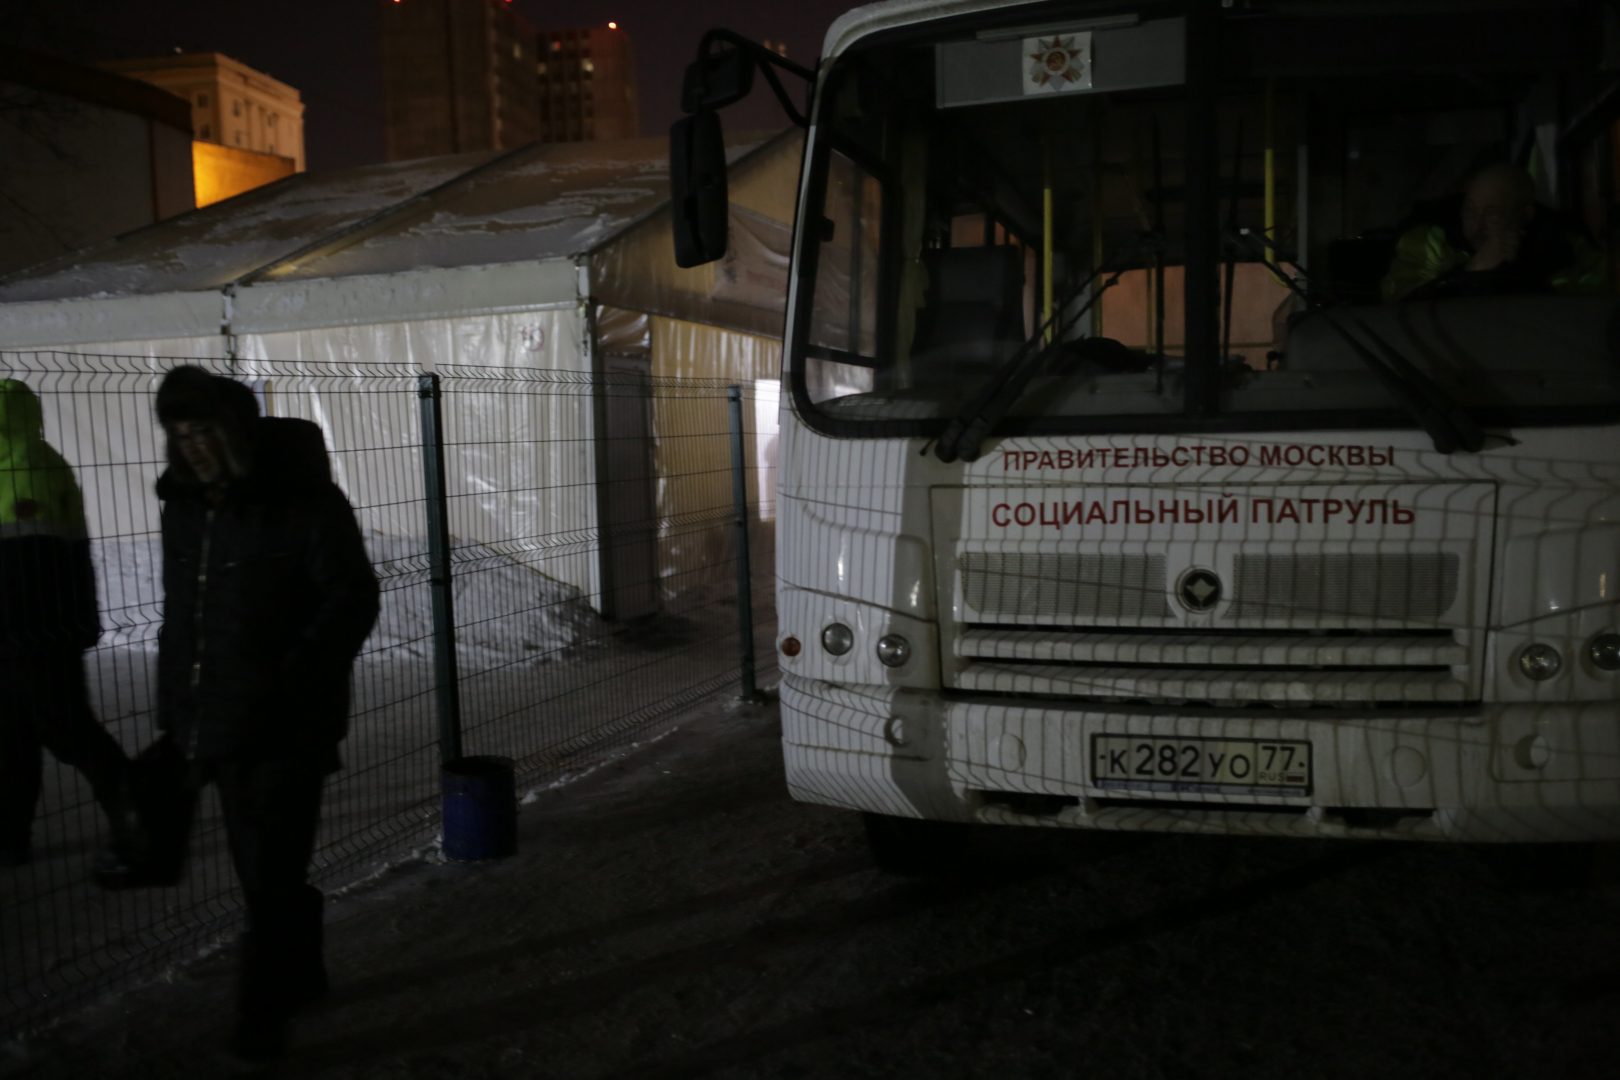 В Москве помочь бездомным людям теперь можно по номеру 112. Фото: Сергей Шахиджанян, «Вечерняя Москва»